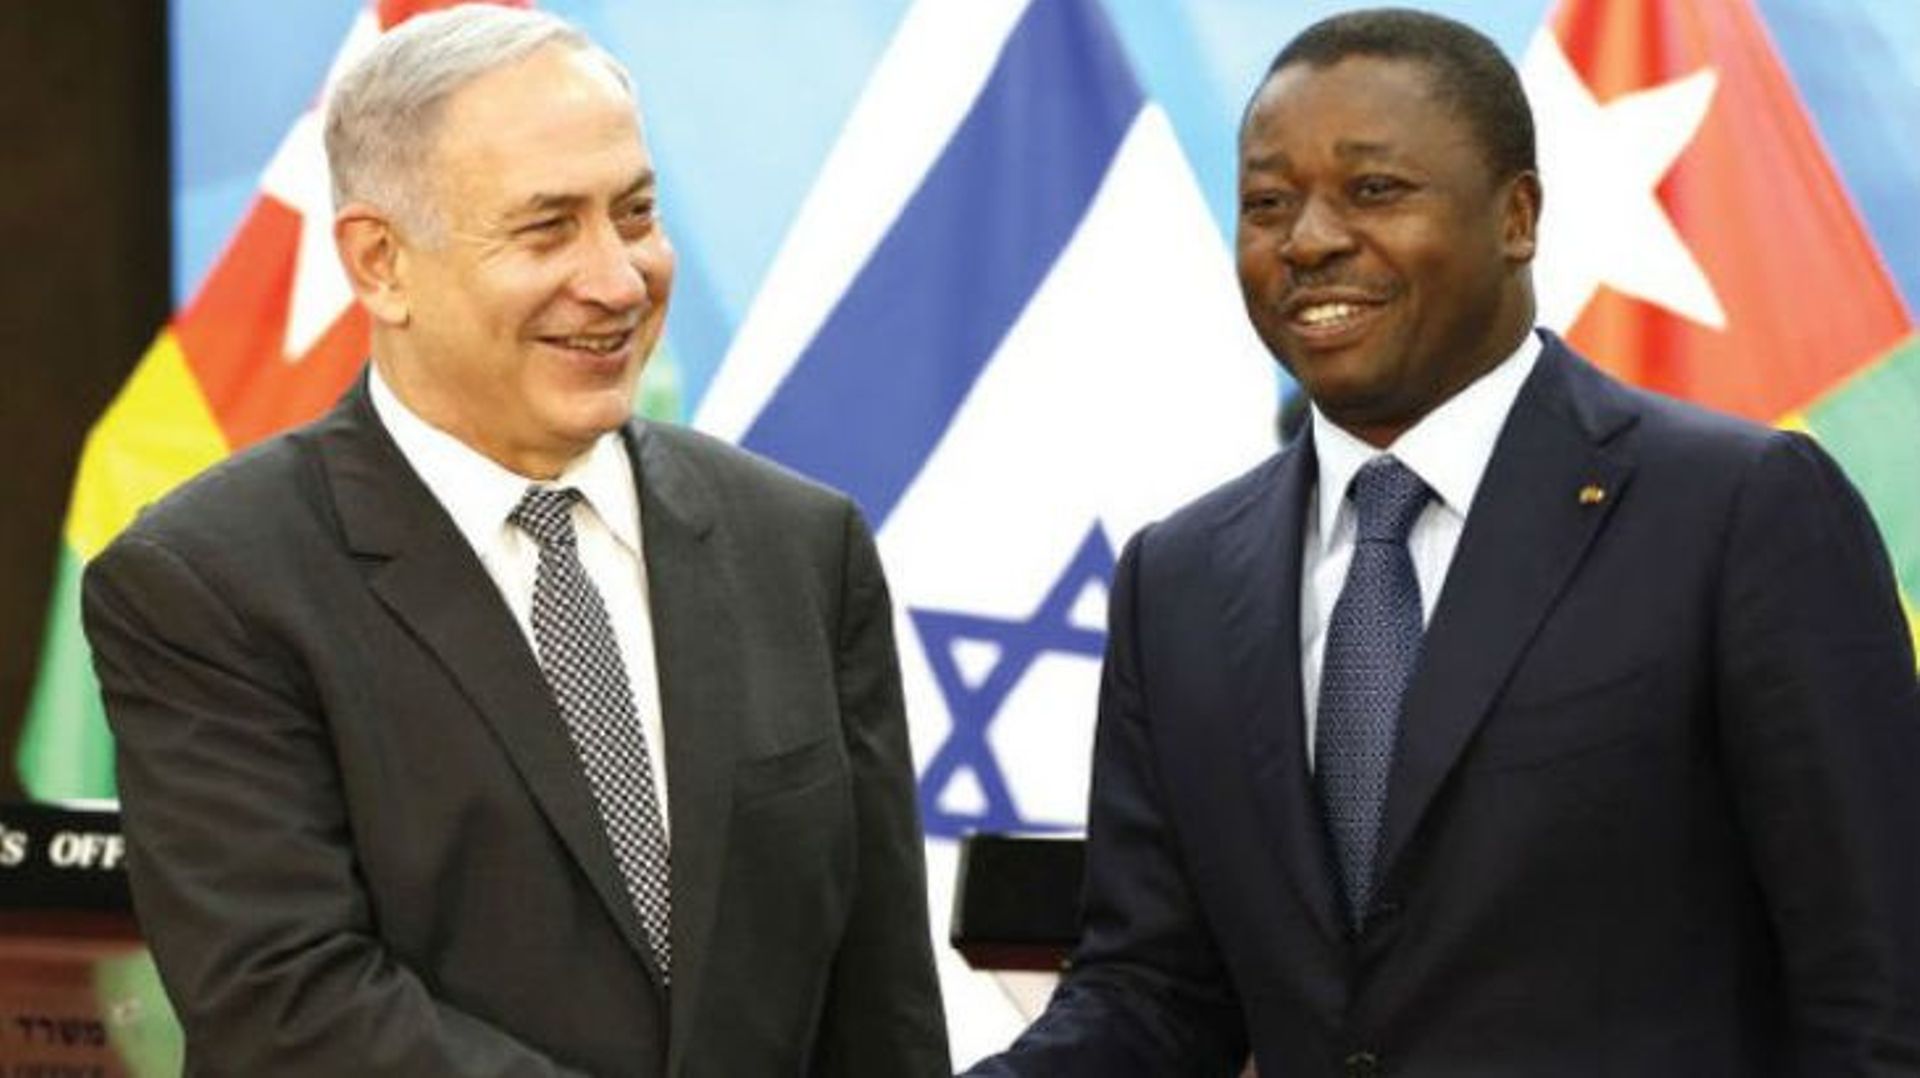 Benjamin Netanyahu, Premier ministre israélien et Faure Gnassingbé, Président togolais